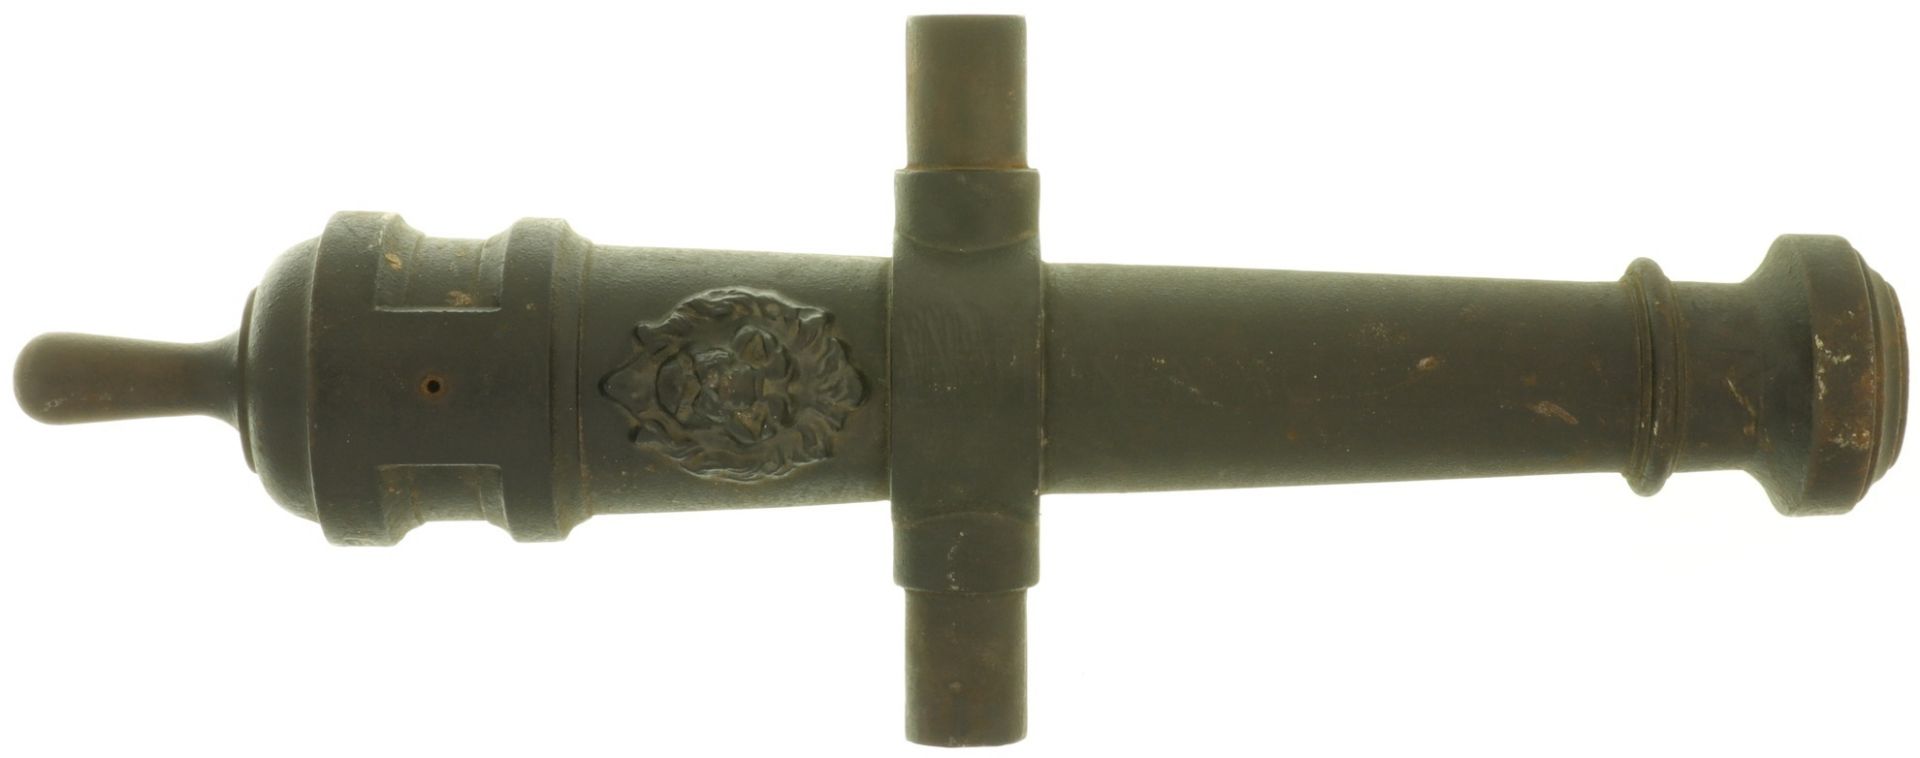 Salut-Kanonenrohr, Kal. 40mm